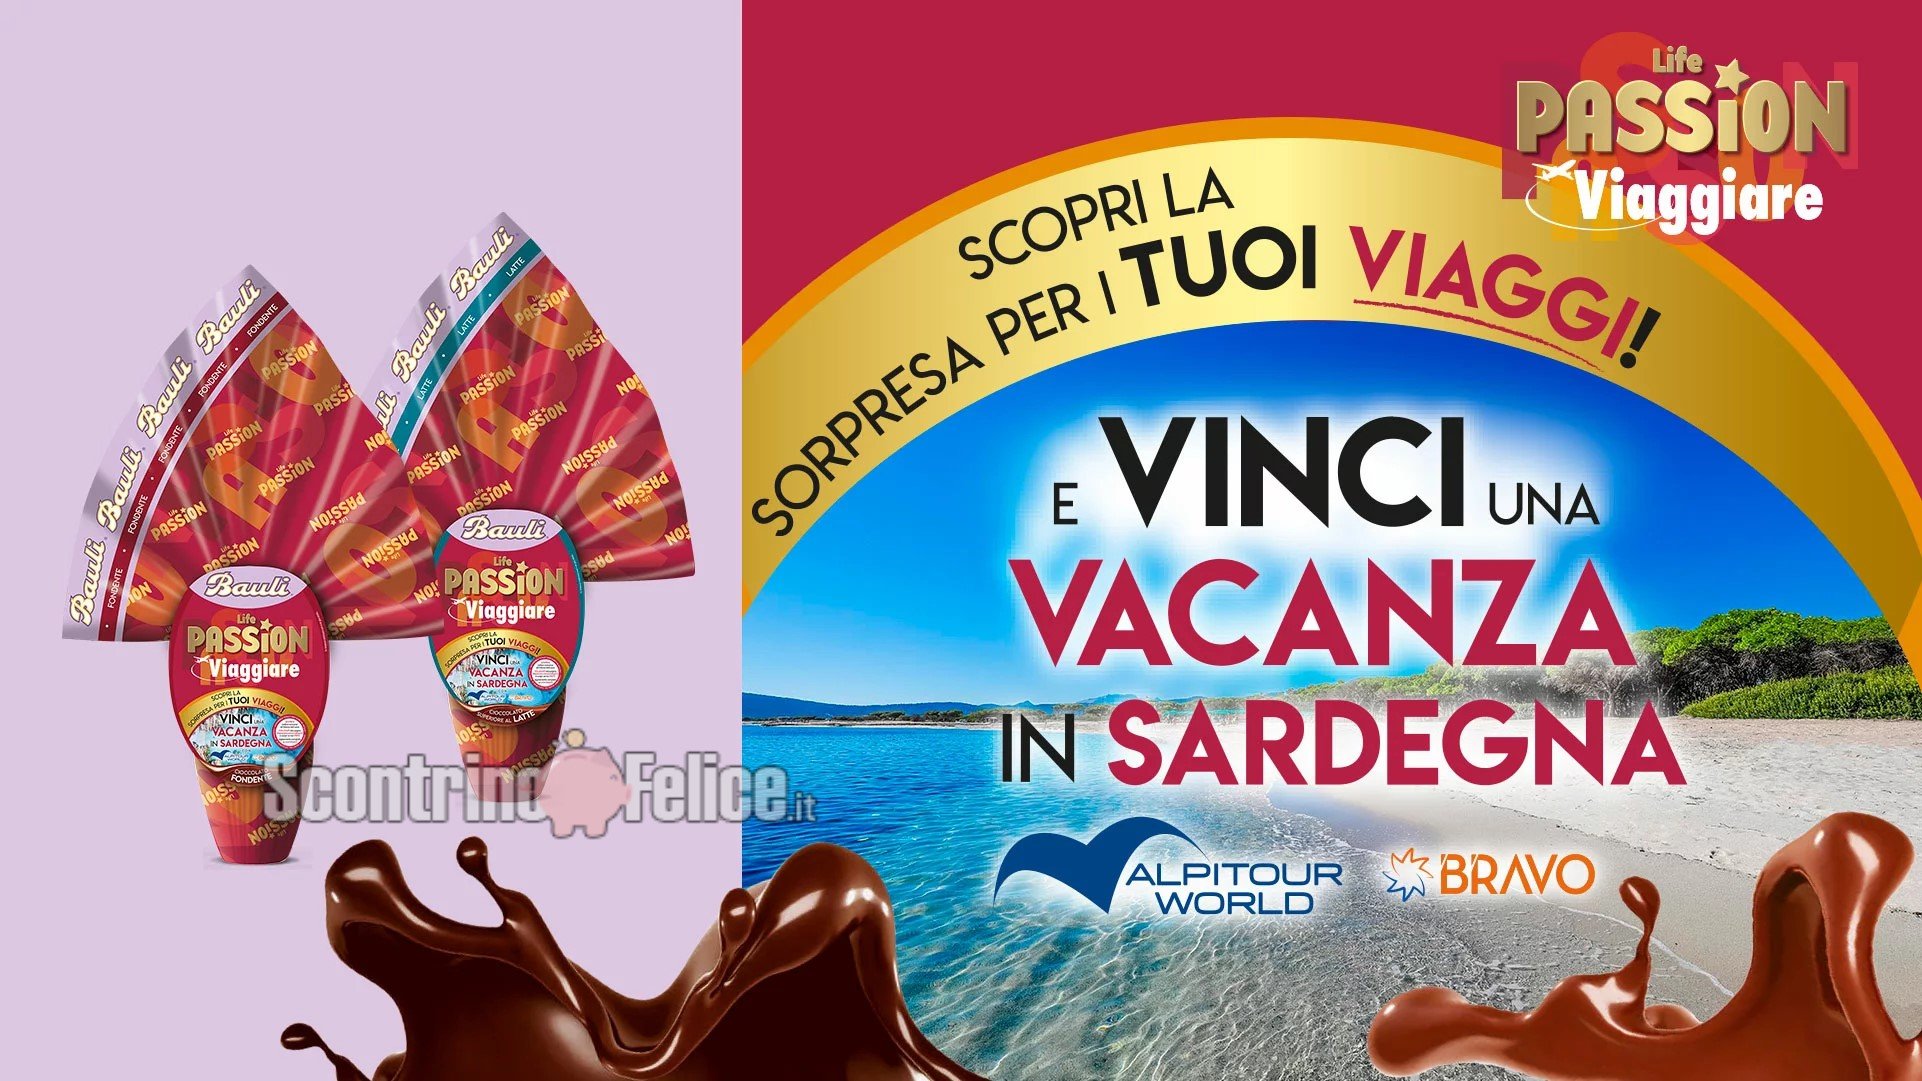 Concorso uova di Pasqua Bauli 2022 Life Passion Viaggiare: vinci una vacanza da sogno in Sardegna